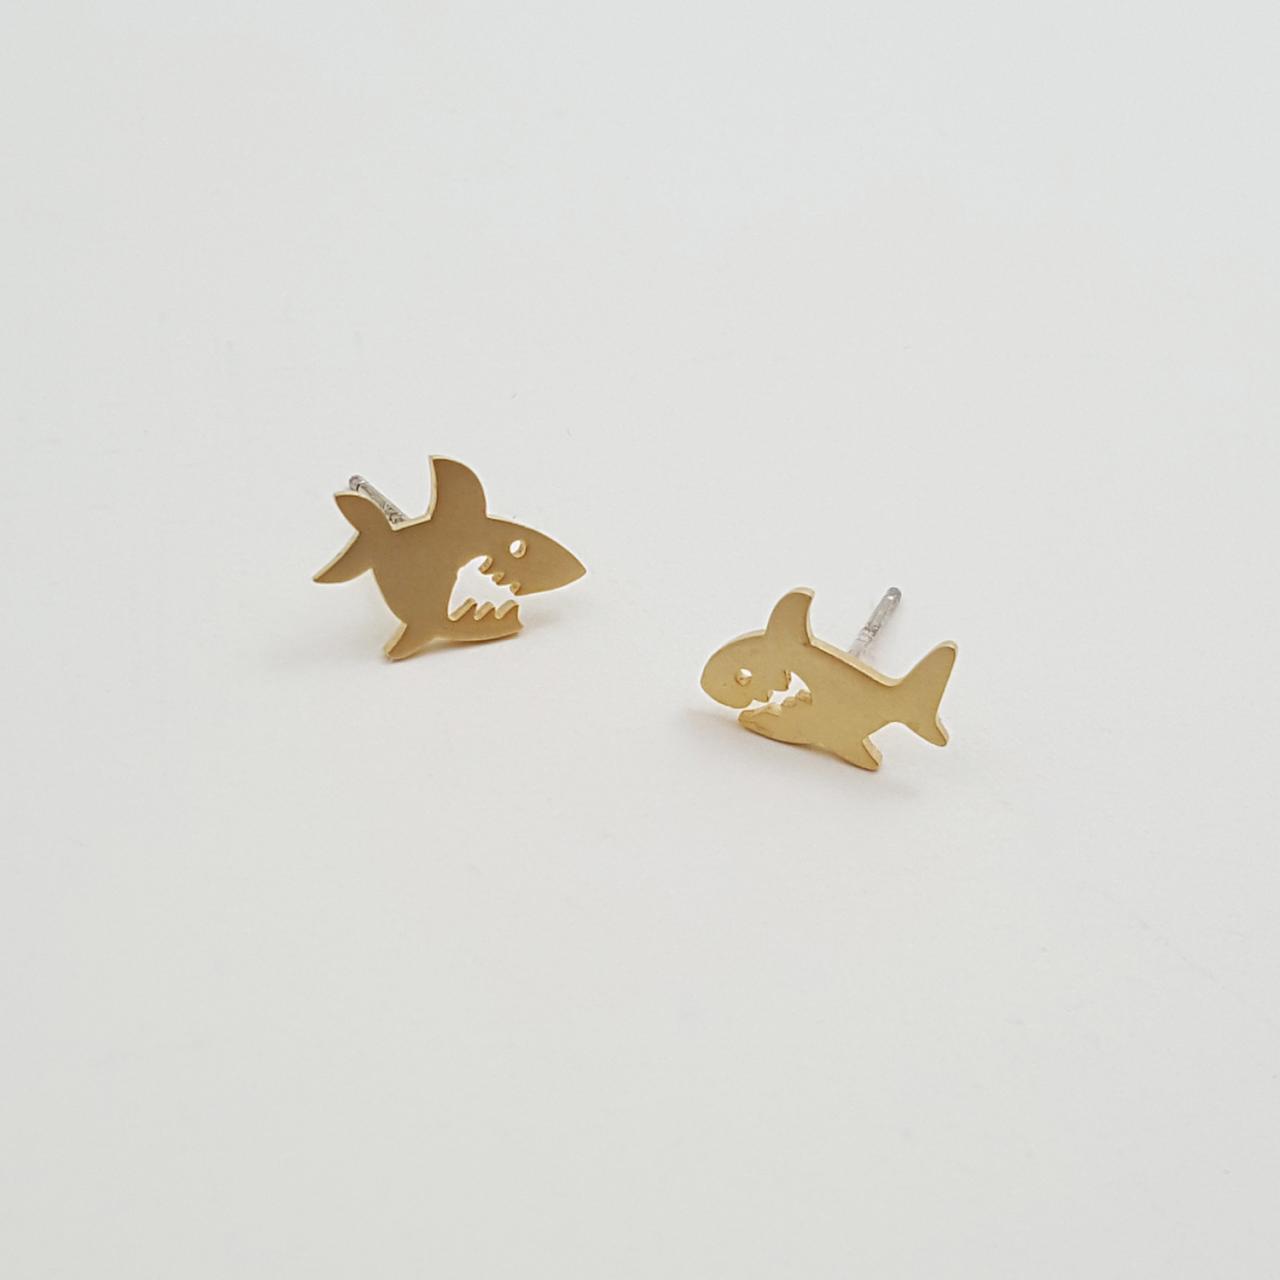 Cute Shark Shaped Stud Earrings In Gold | Minimalist Animal Jewelry